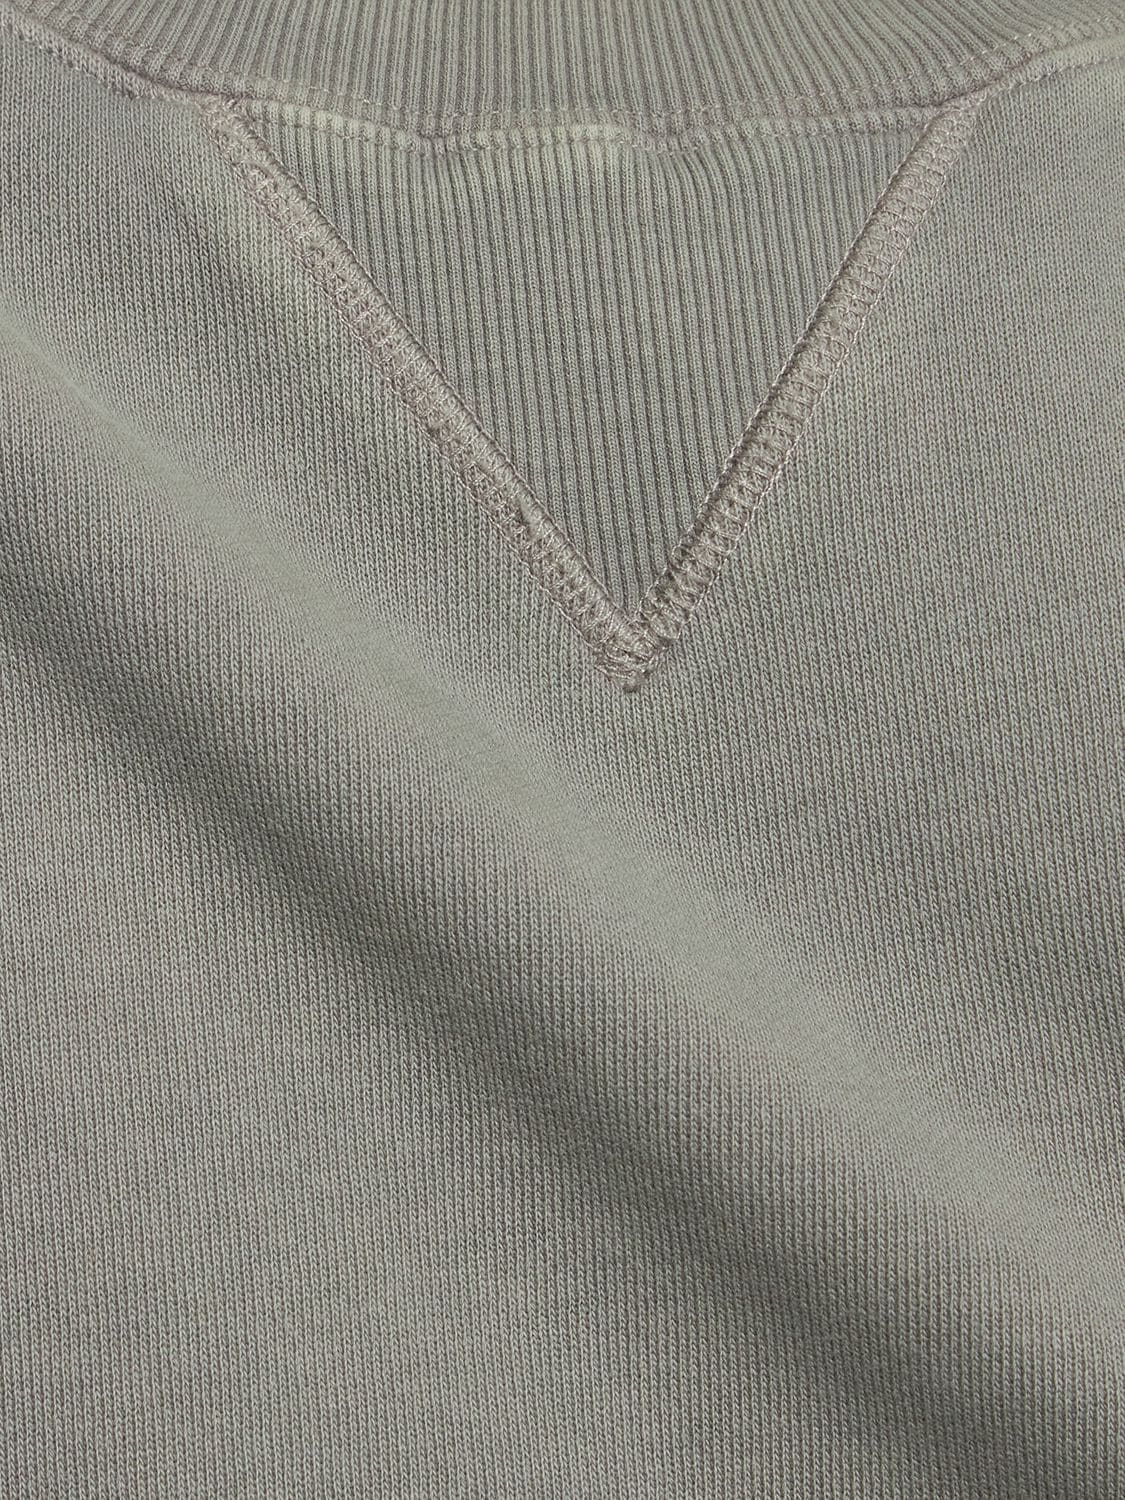 Shop Entire Studios Boxy Crewneck Sweatshirt In Grey